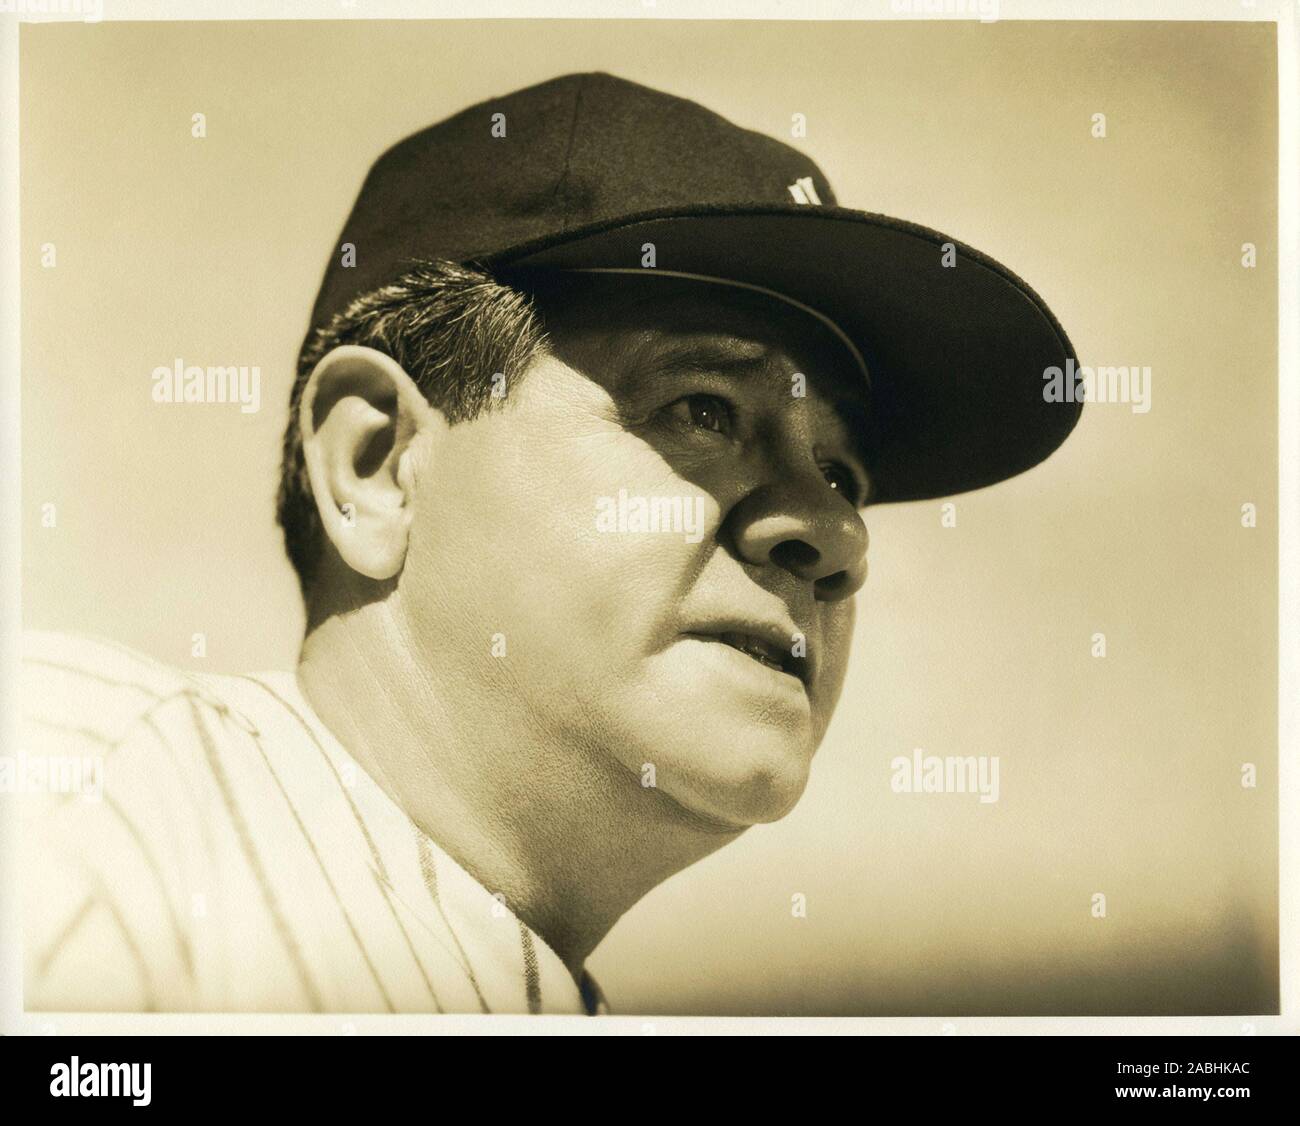 Vintage clásico retrato del legendario jugador de béisbol de Nueva York Yankee Babe Ruth. Foto de stock